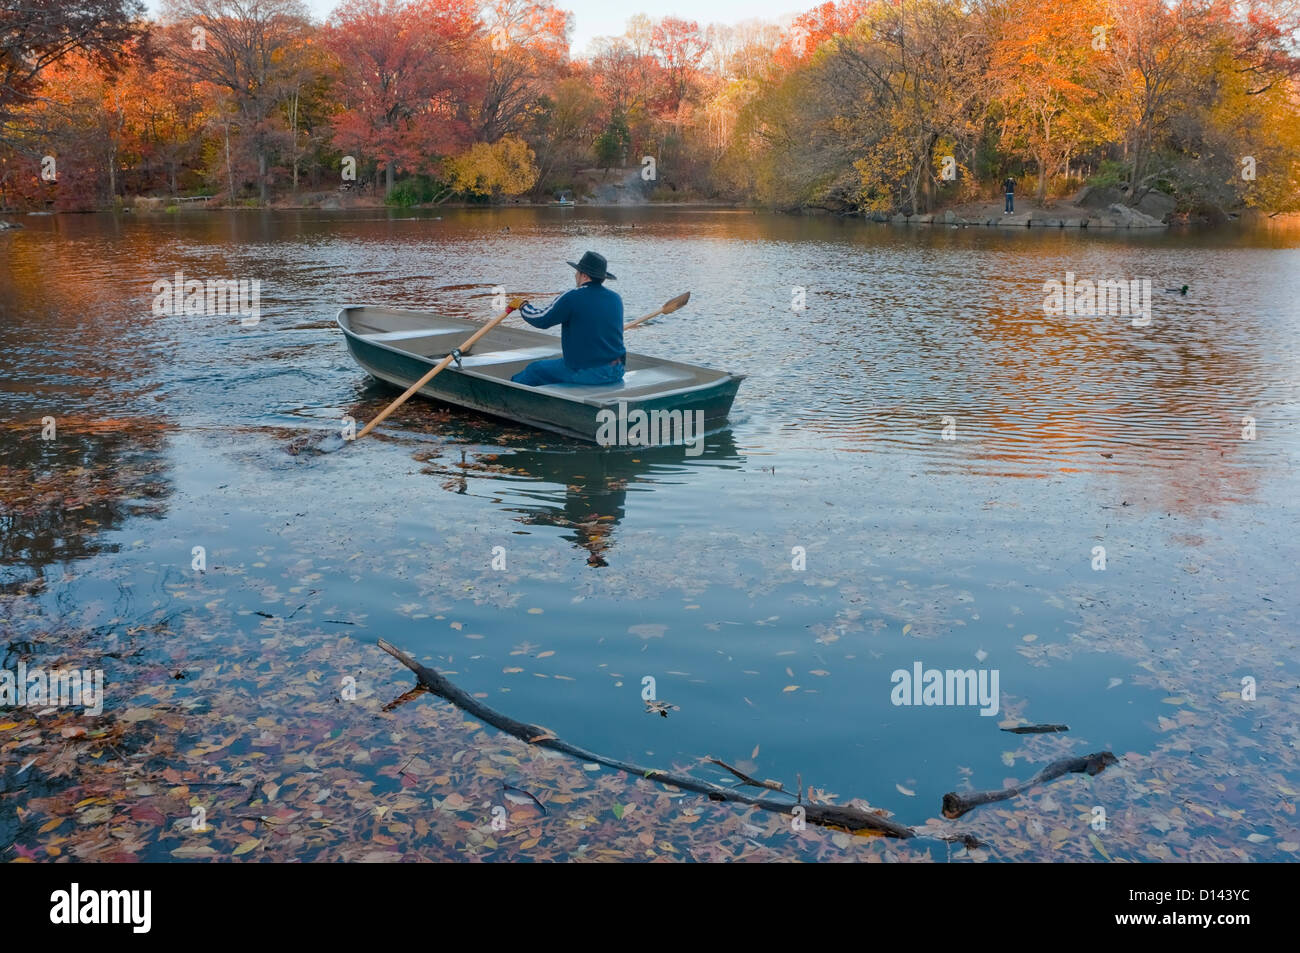 New York, NY - 19 novembre 2010 un bateau d'aviron de l'homme dans le lac dans Central Park Banque D'Images